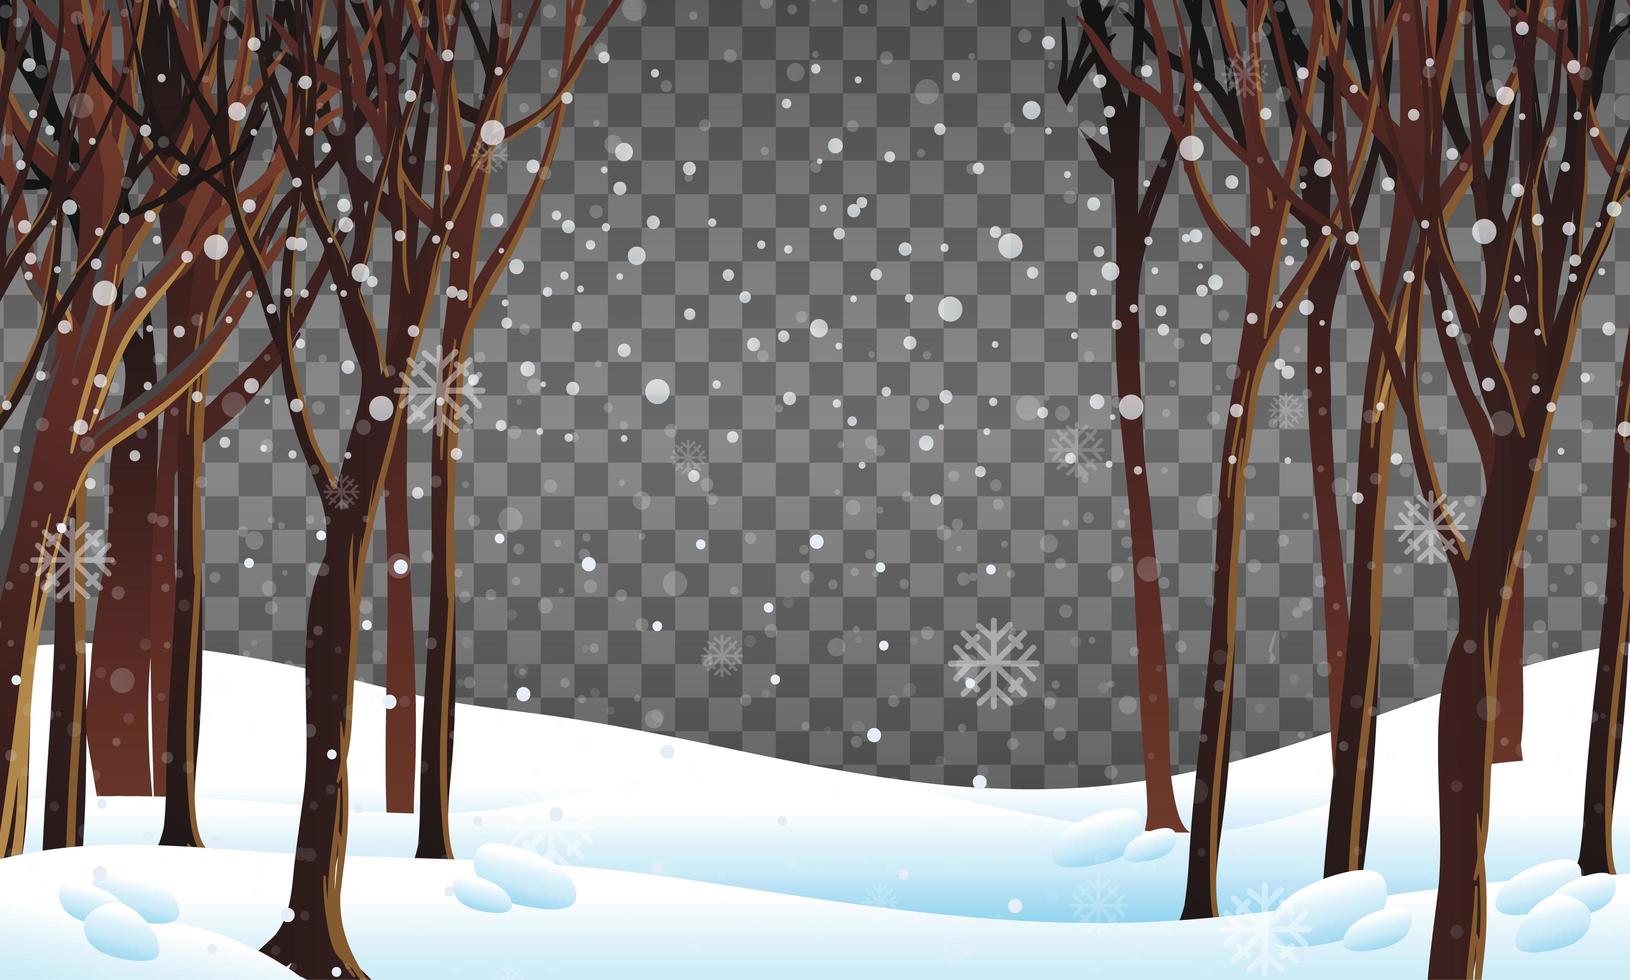 escena de la naturaleza en el tema de la temporada de invierno con fondo transparente vector